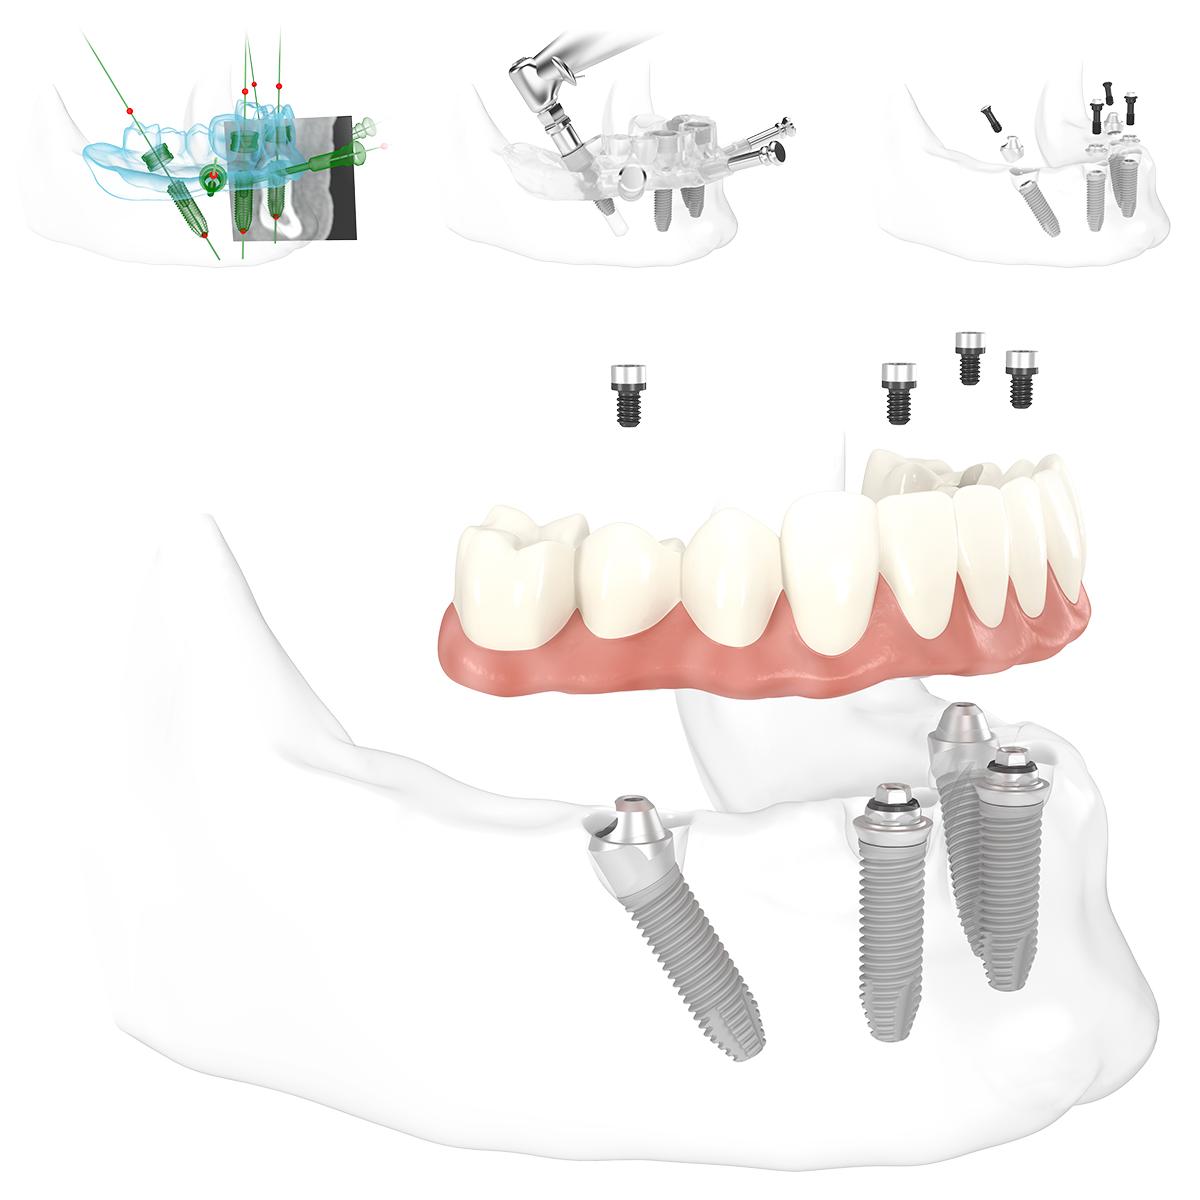 Schematische Abbildung der positionen der Implantate bei All-on-4 in der Zahnarztpraxis Pfau in Rottweil